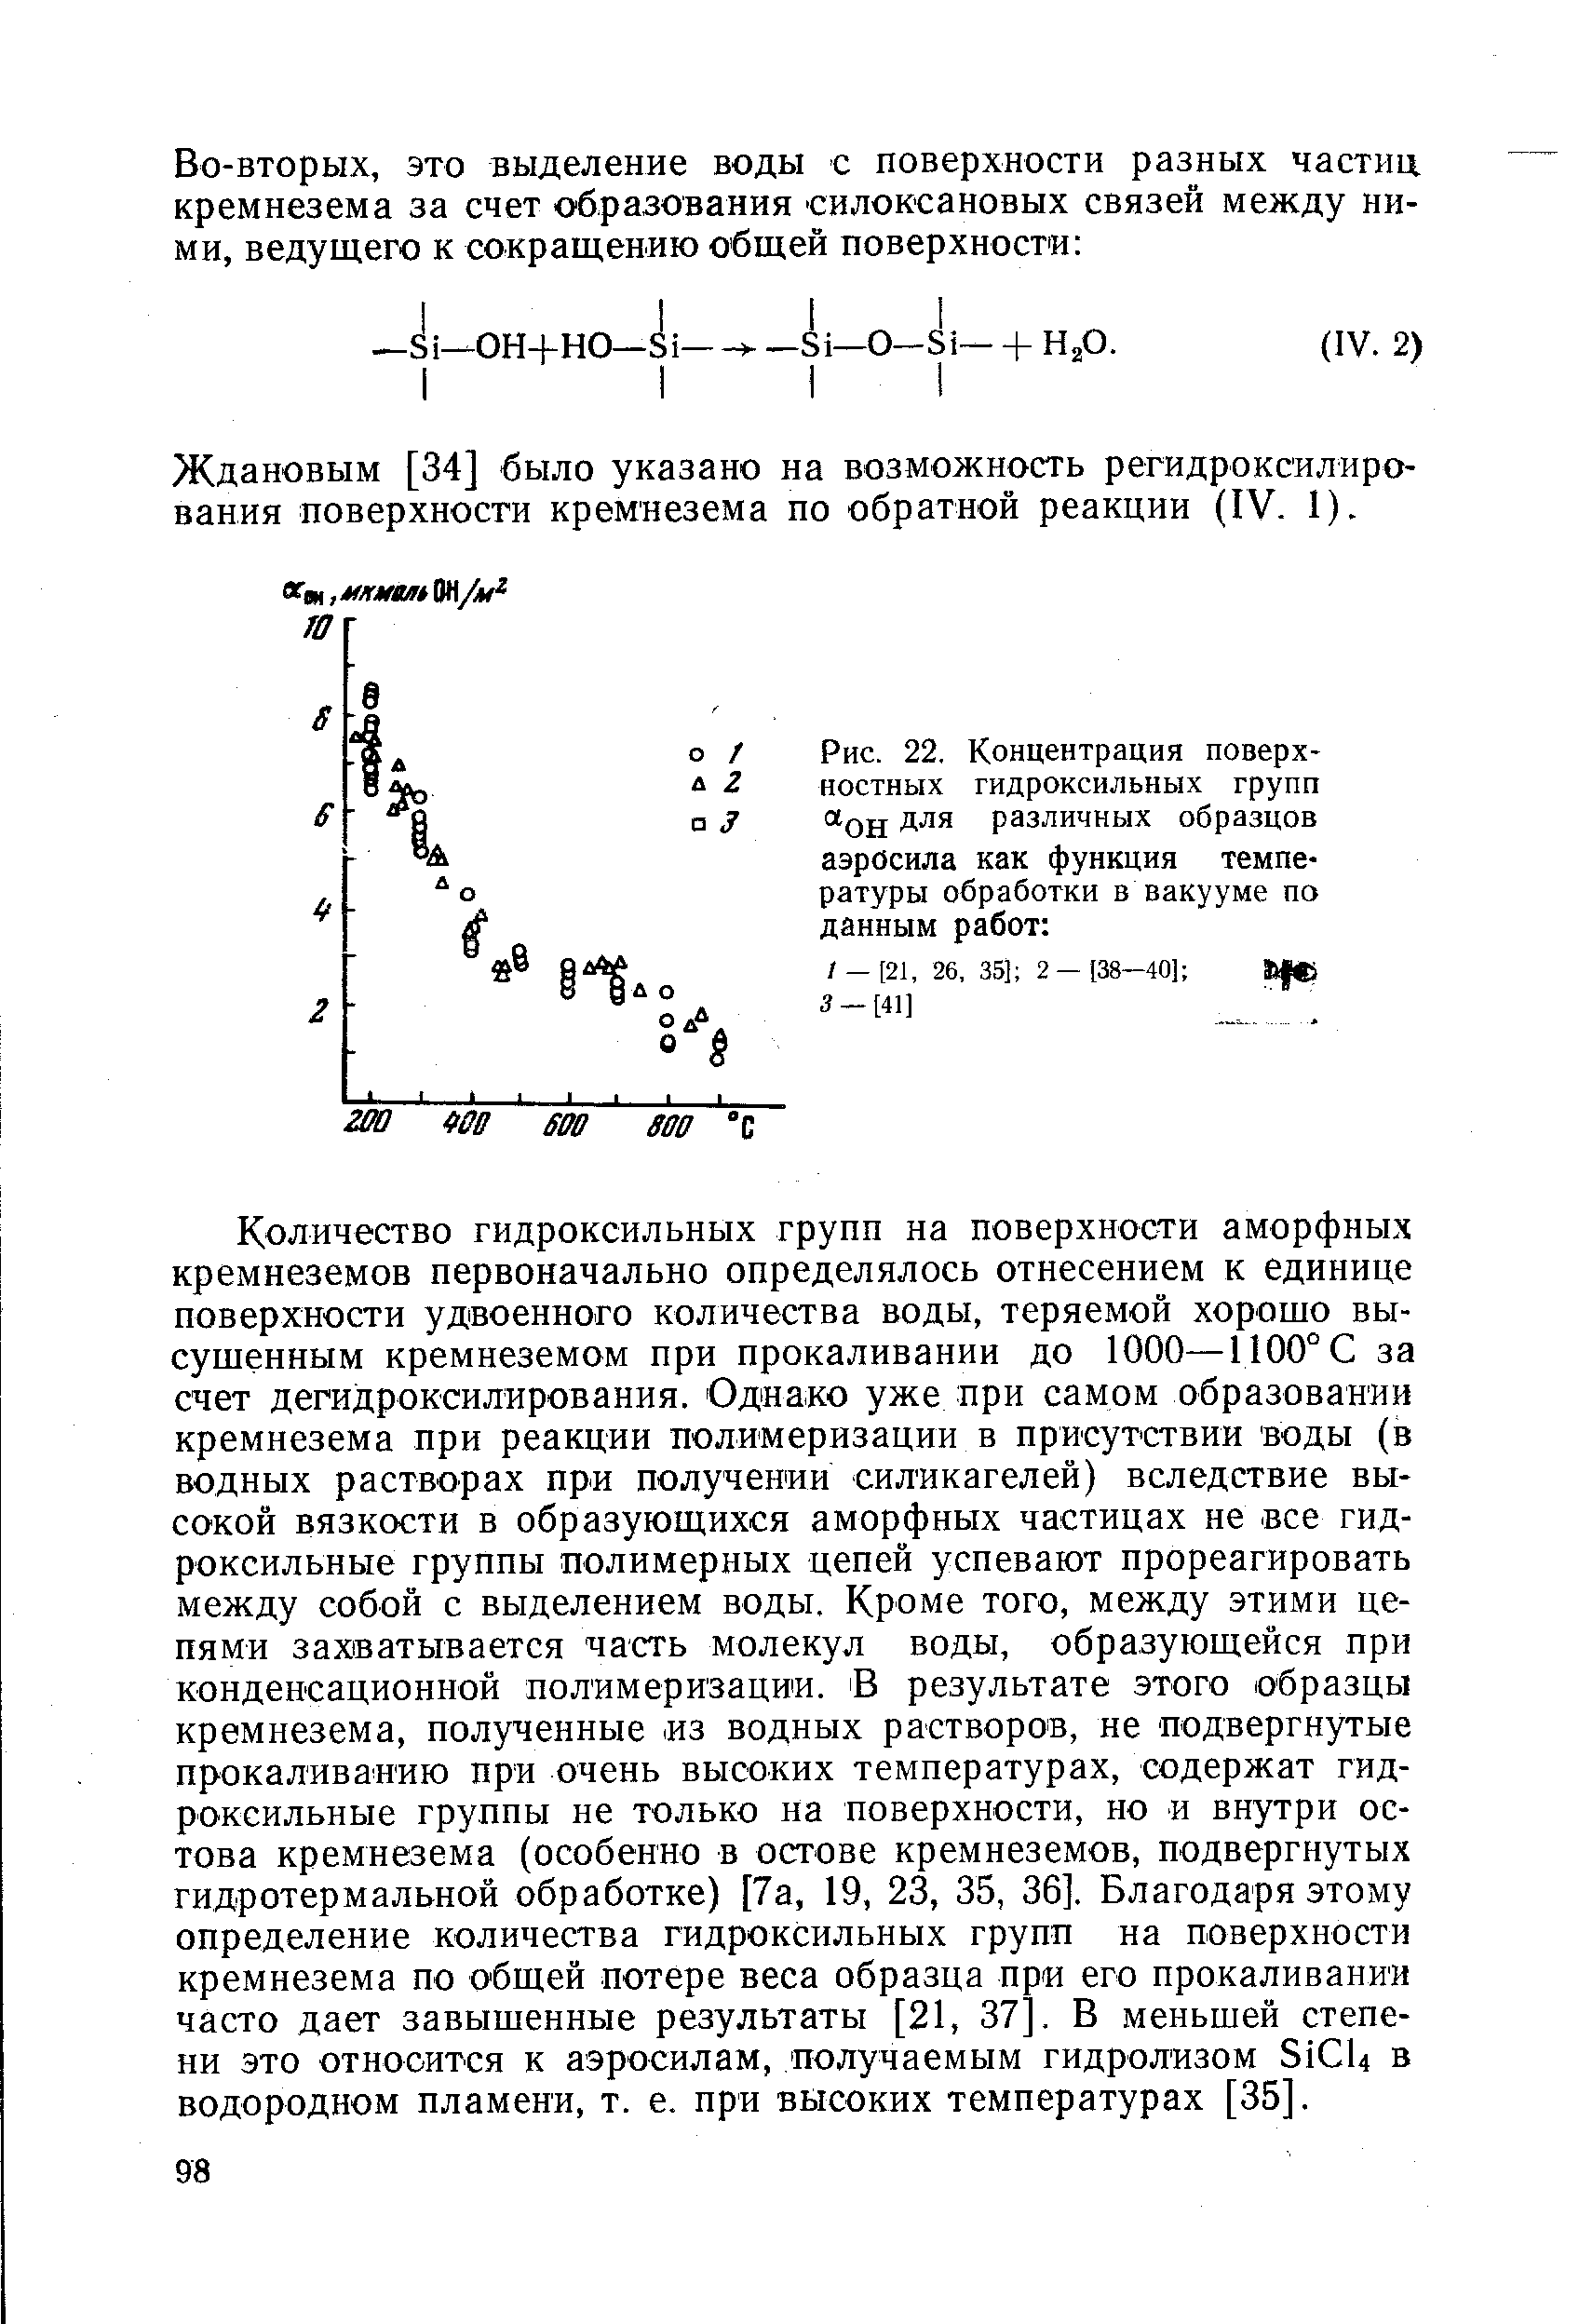 Ждановым [34] было указано на возможность регидроксилиро-вания поверхности кремнезема по обратной реакции (IV. 1).